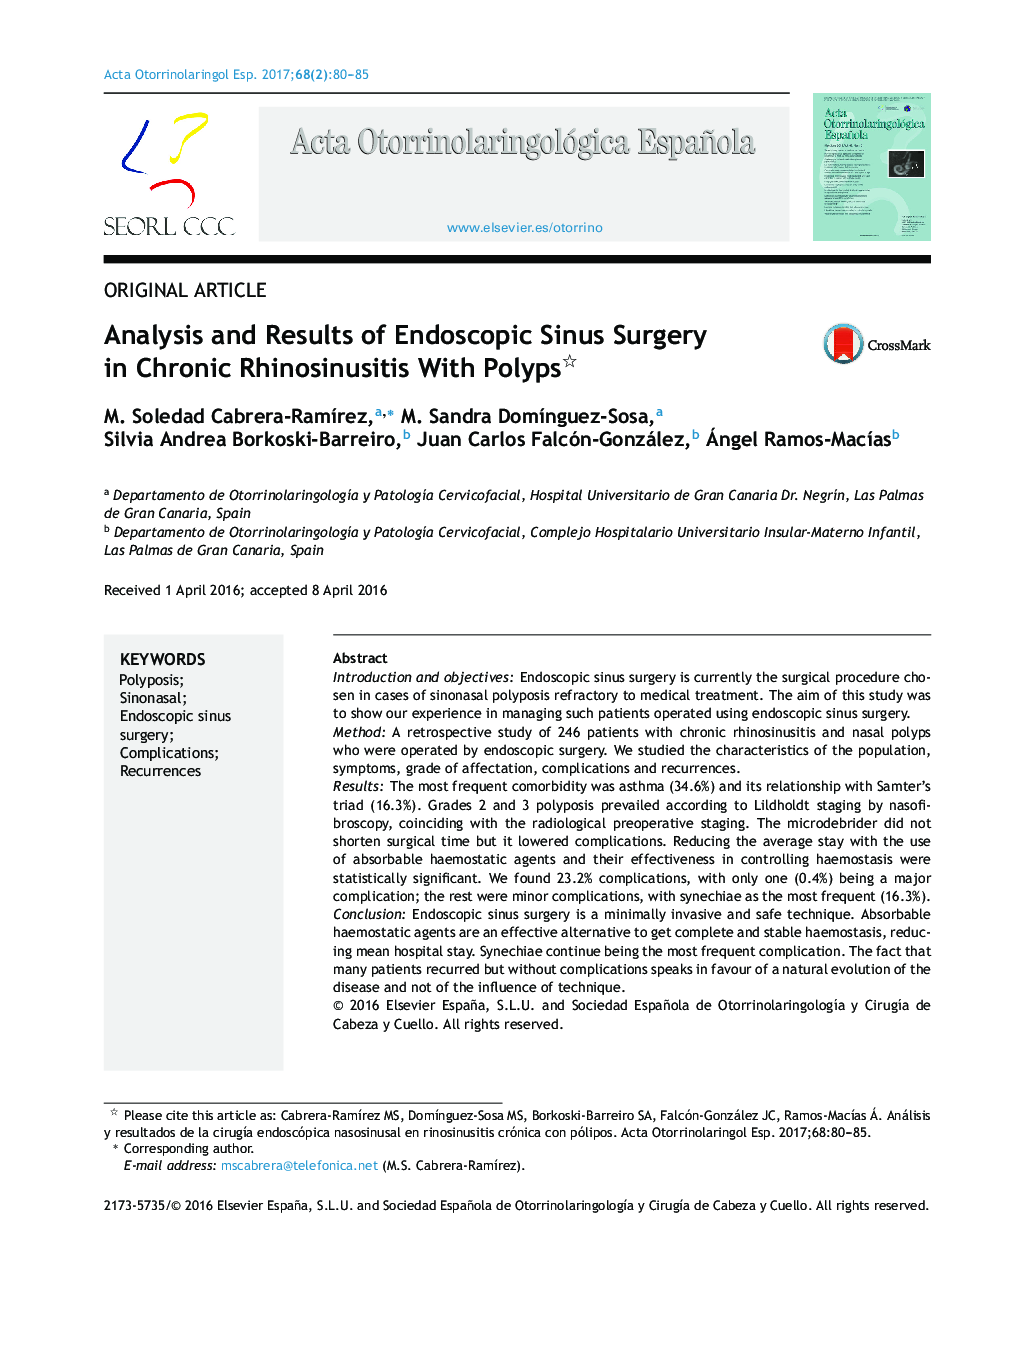 تجزیه و تحلیل و نتایج جراحی سینوس آندوسکوپی در رینو زایسید مزمن با پولیپ 